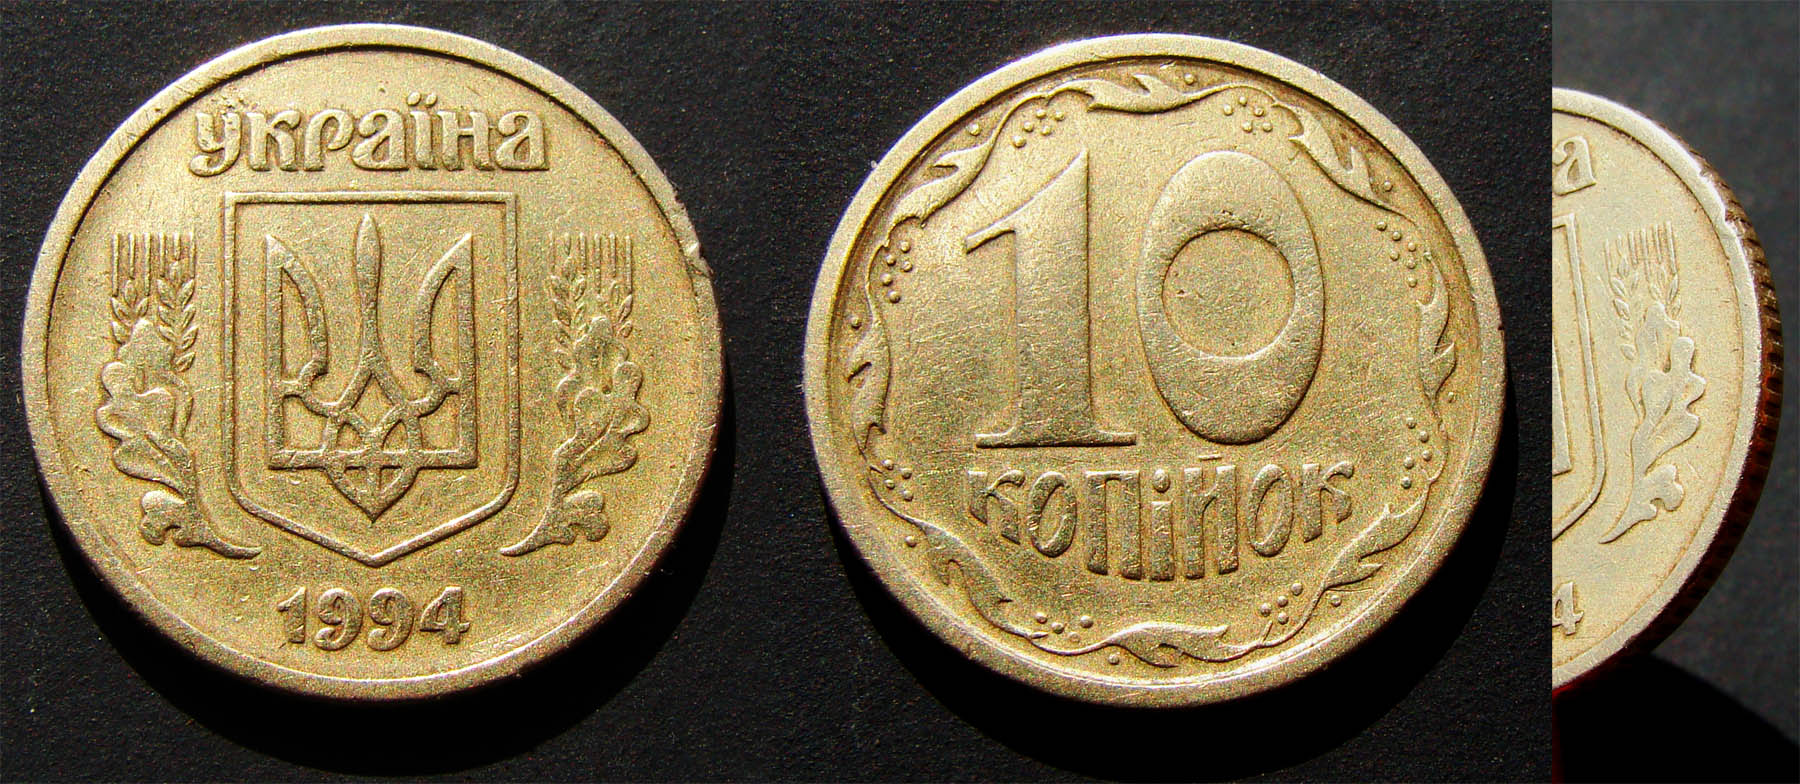 10 копеек 1994г. Примерная стоимость около 1000грн. - Дорогие монеты Украины